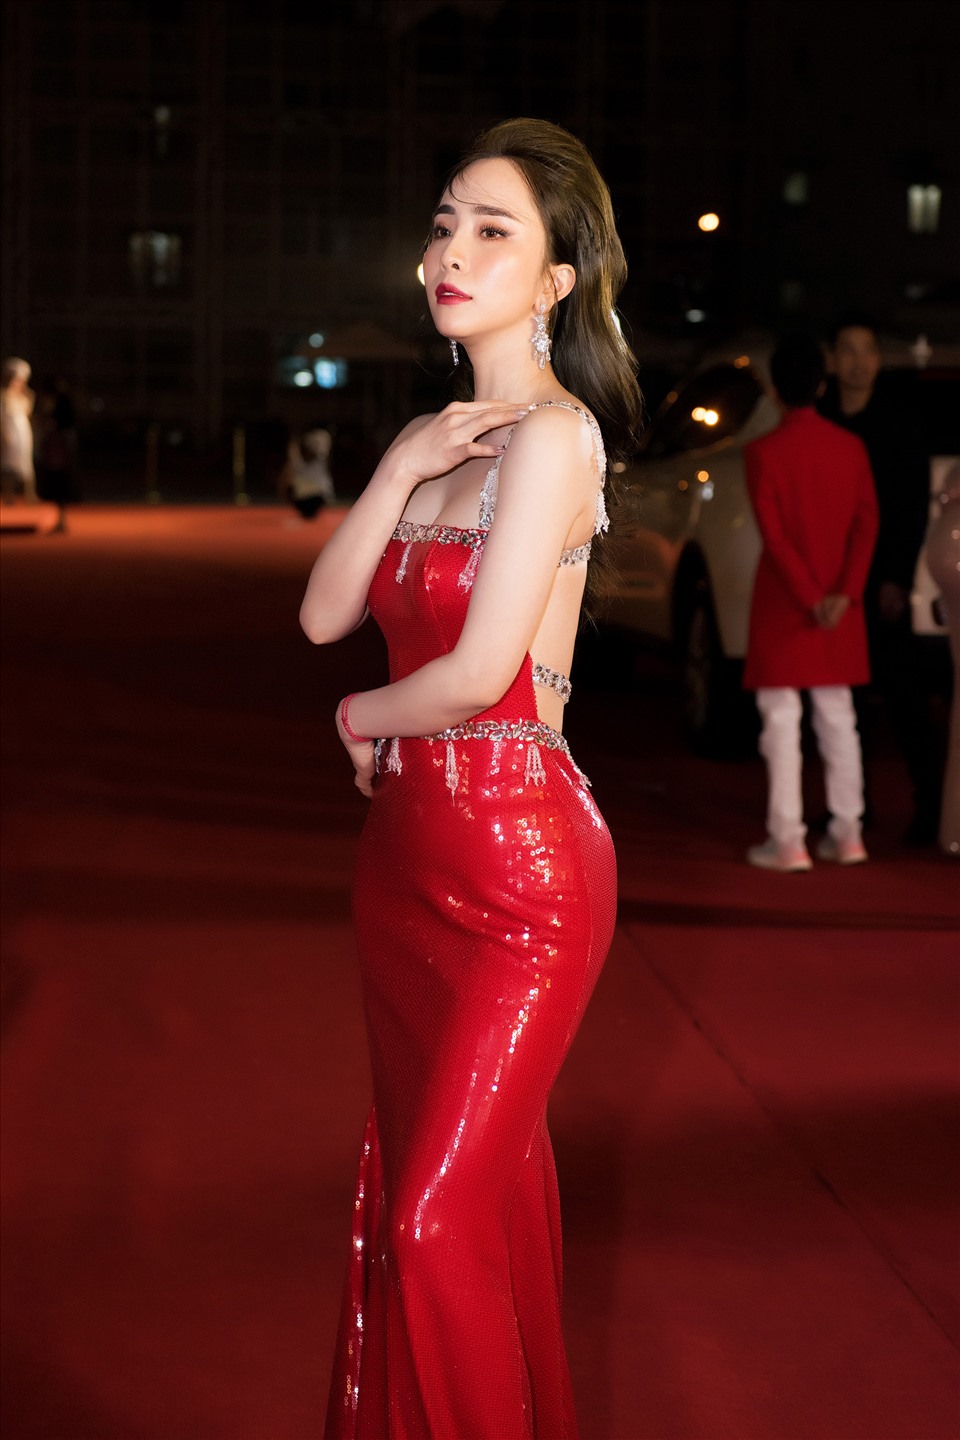 Là một trong những mỹ nhân của showbiz Việt sở hữu ba vòng hoàn hảo cùng làn da trắng mịn lý tưởng, Quỳnh Nga nổi bật với hình ảnh không tì vết với chiếc dạ hội đỏ.  Ảnh: Thiên Hùng